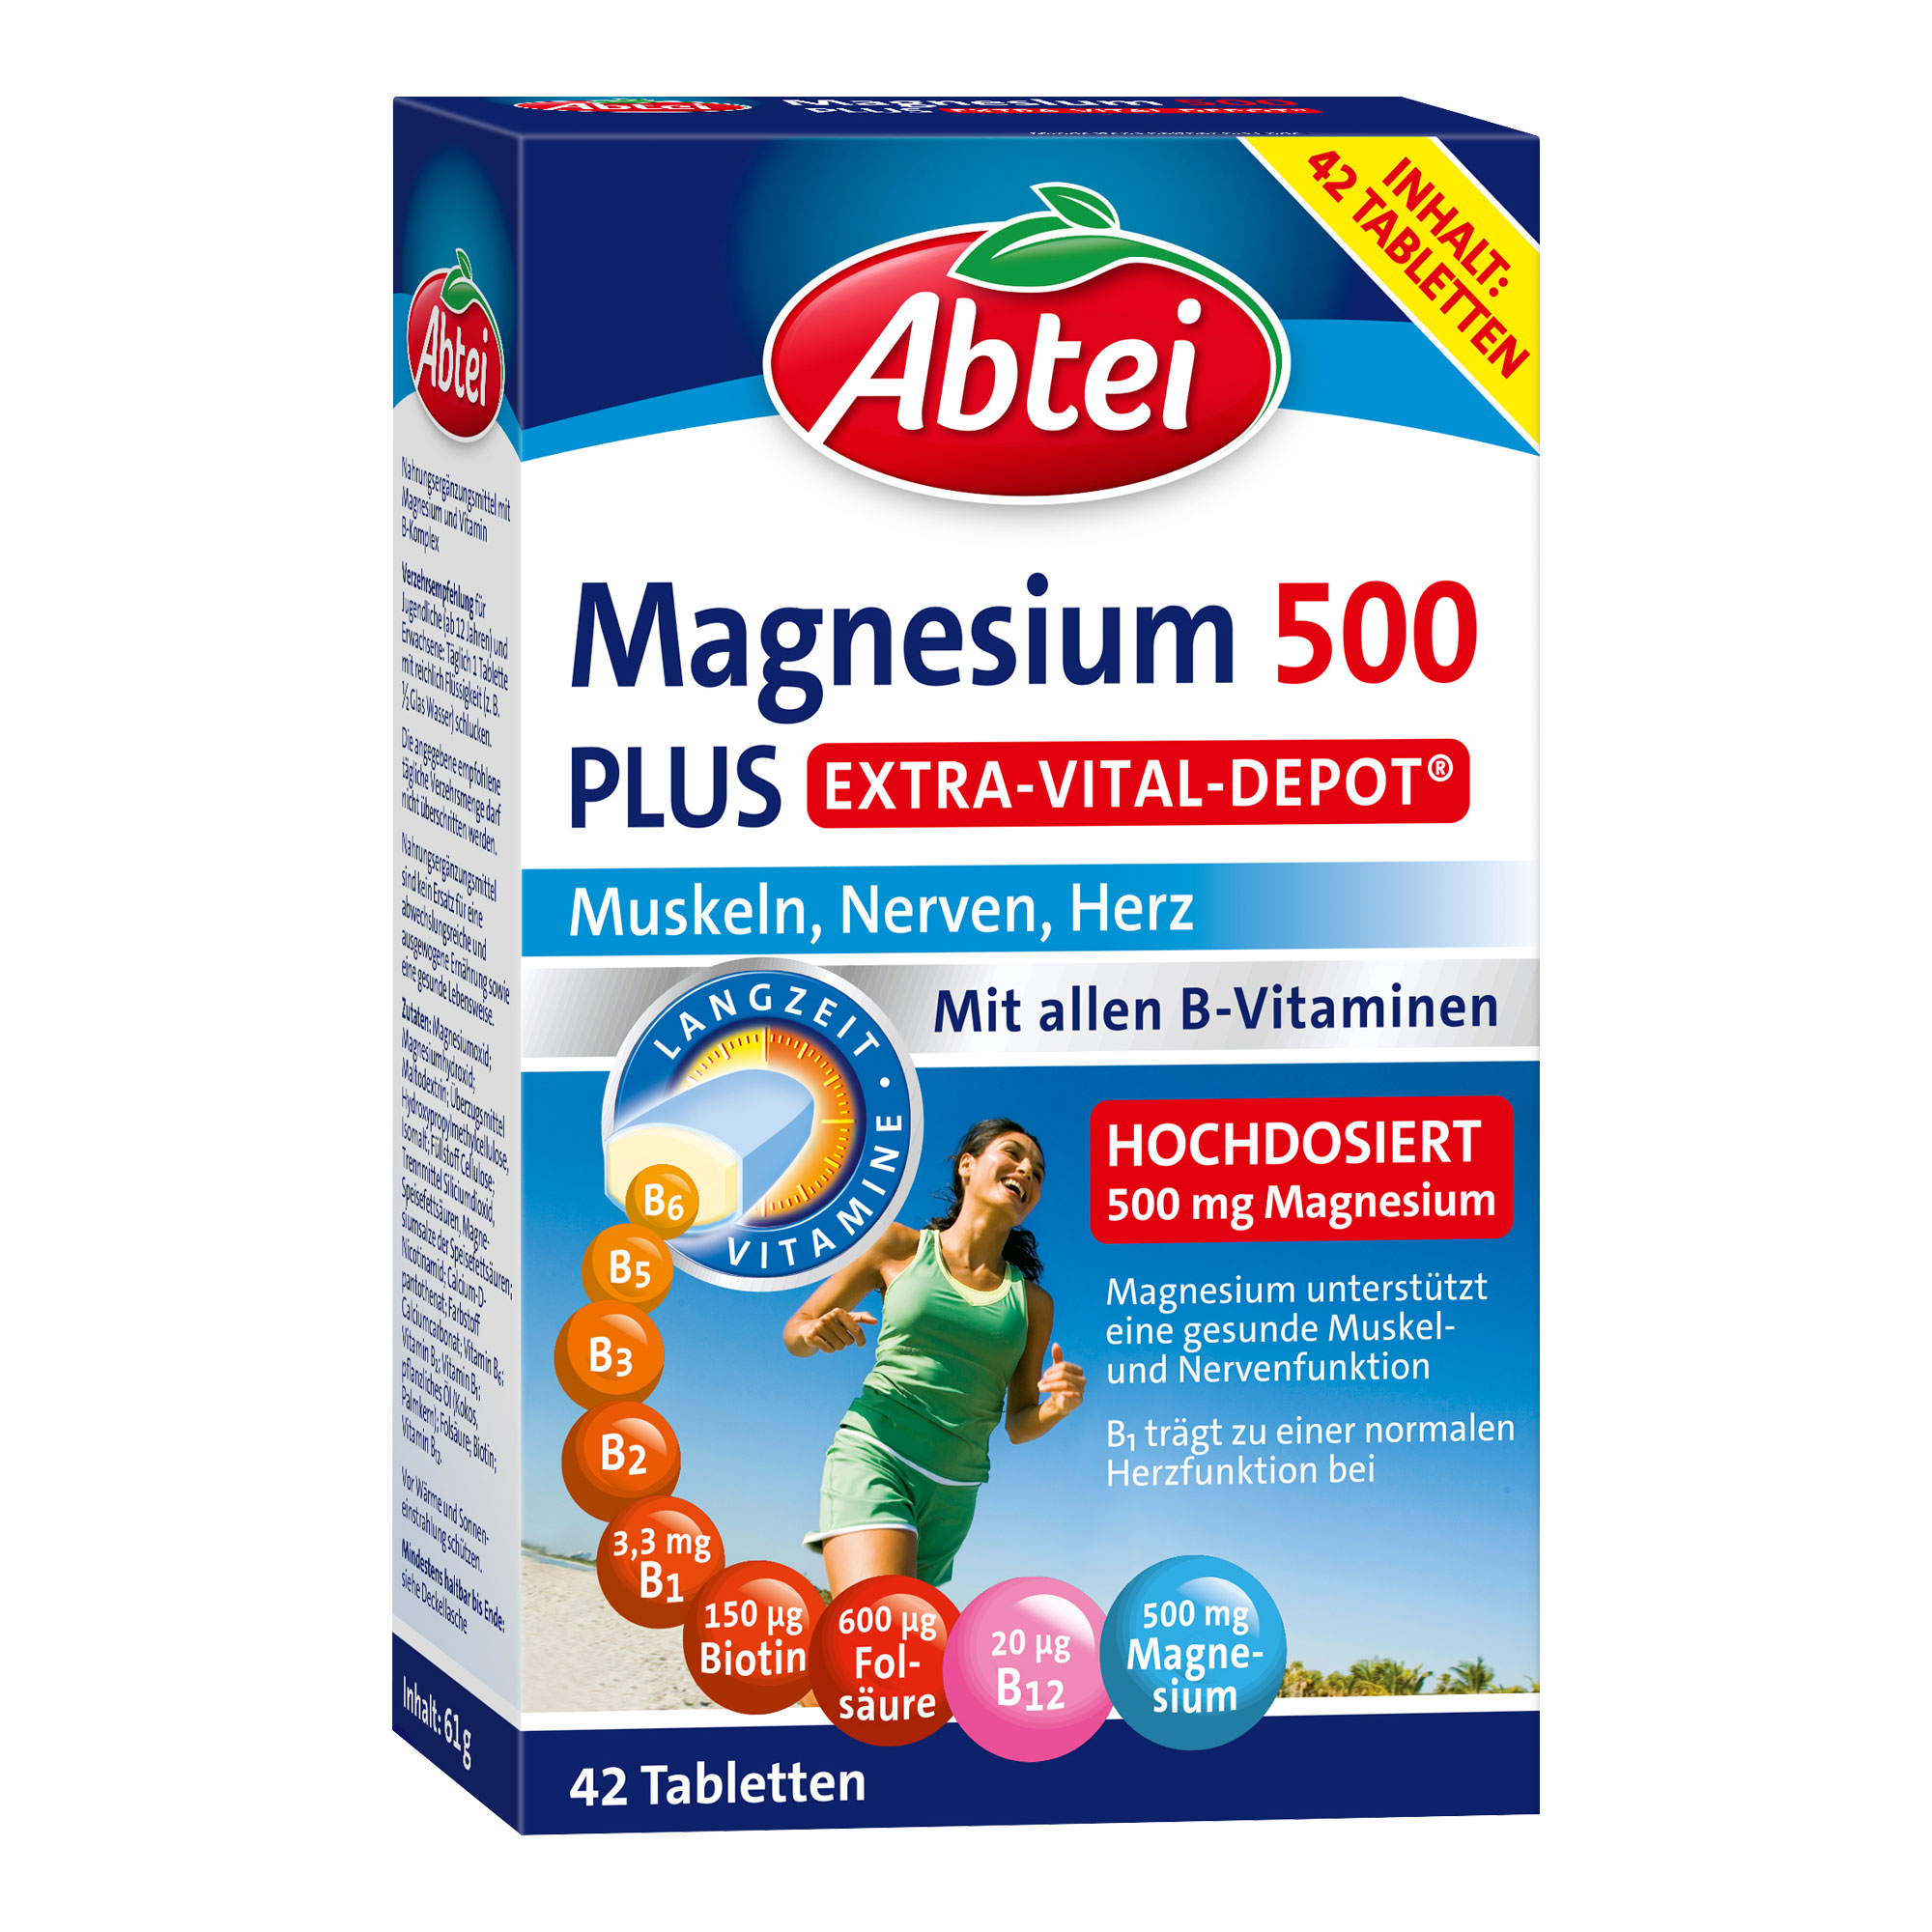 Nahrungsergänzungsmittel mit Magnesium und Vitamin B-Komplex.